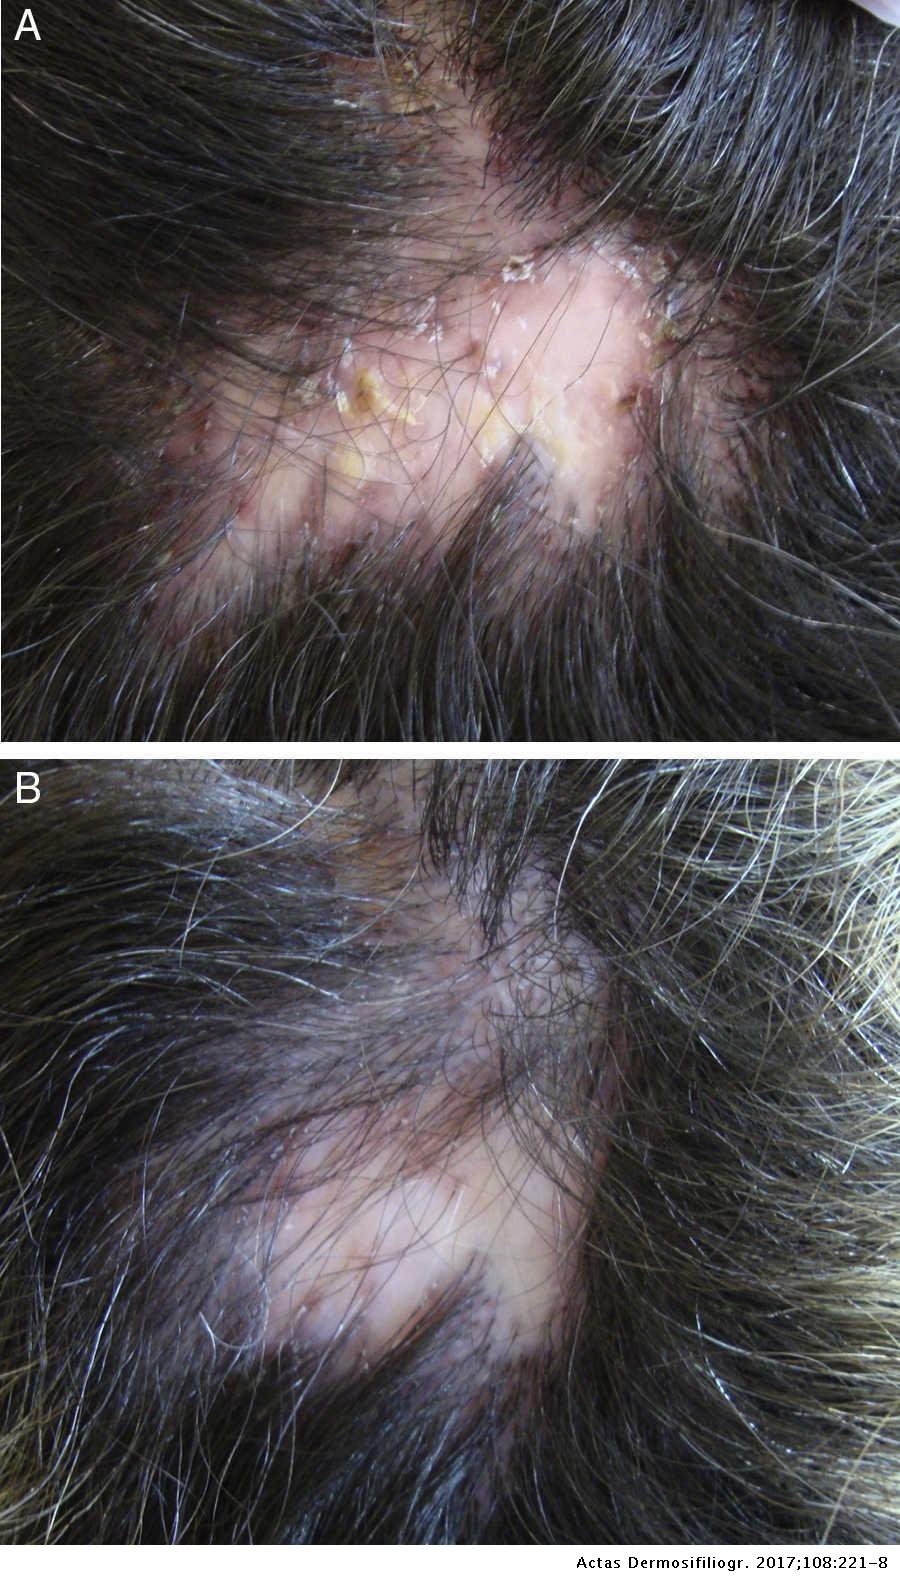 helmintikus terápia alopecia areata